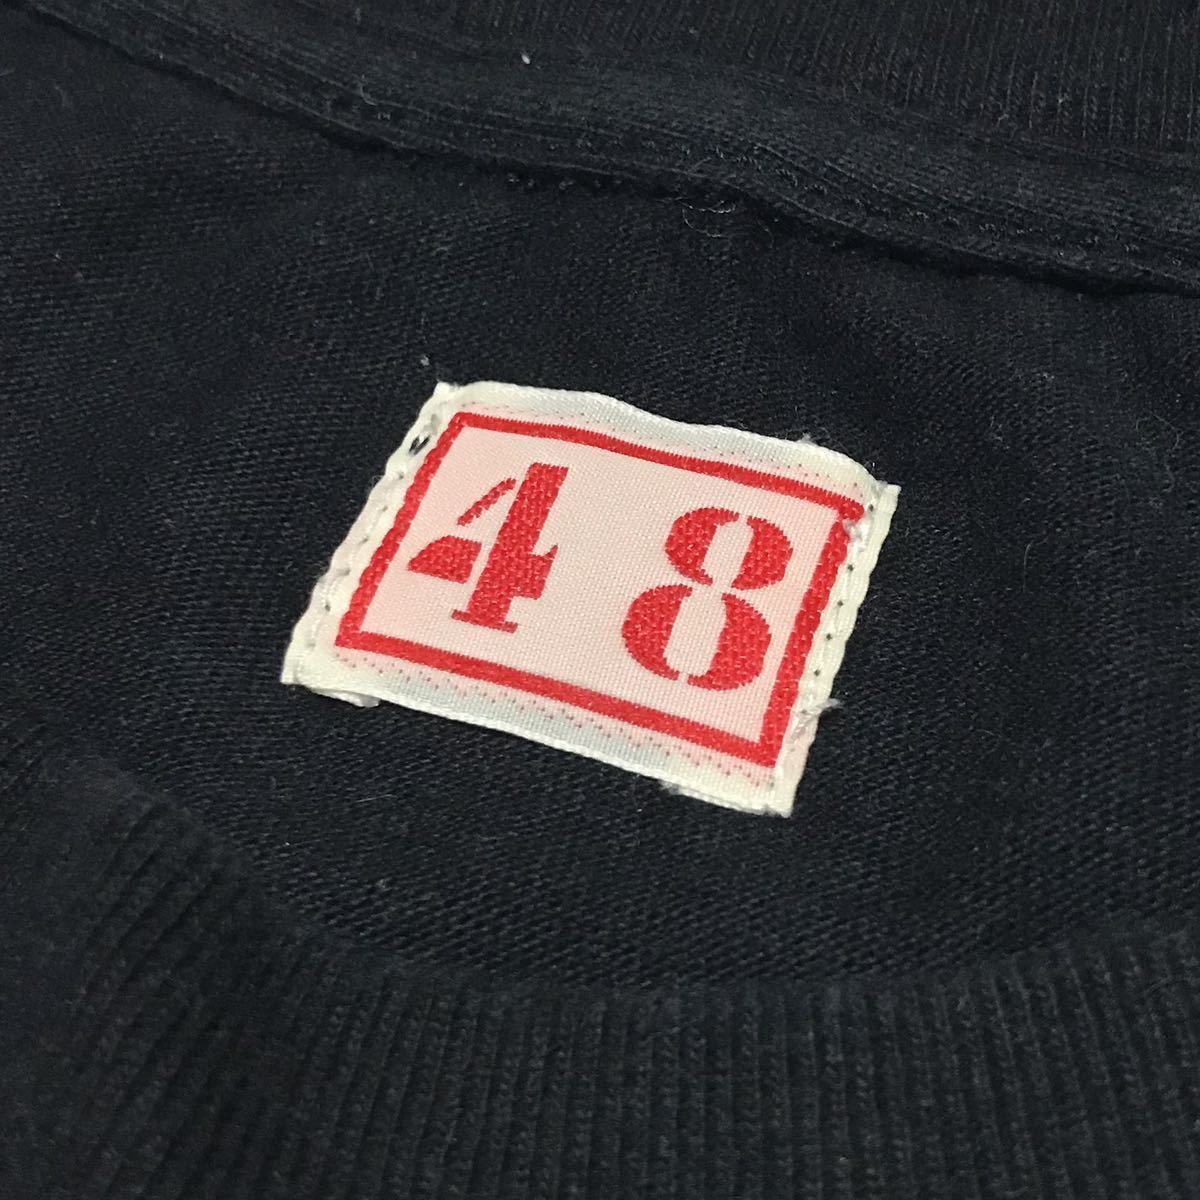 【NEXUSⅦ】ネクサス7 タイガーロゴ グラフィック Tシャツ メンズ48/L ブラック 黒 コットン 半袖Tee トラ 両面プリント USED 古着 正規品の画像3